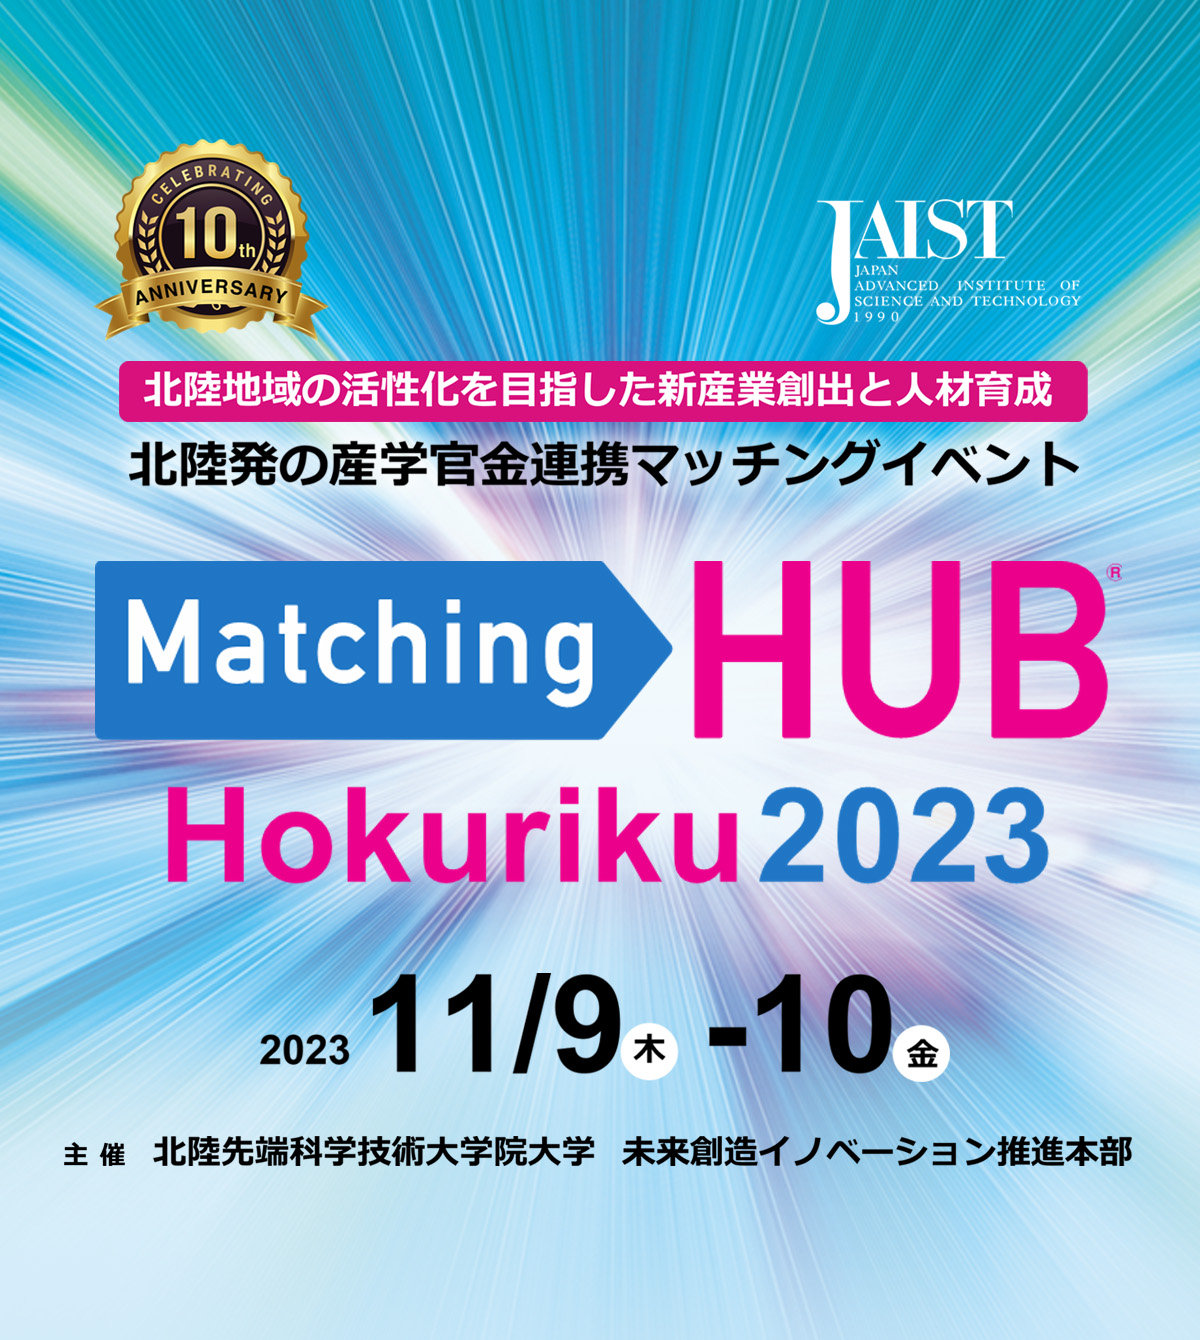 Matching HUB Hokuriku 2023